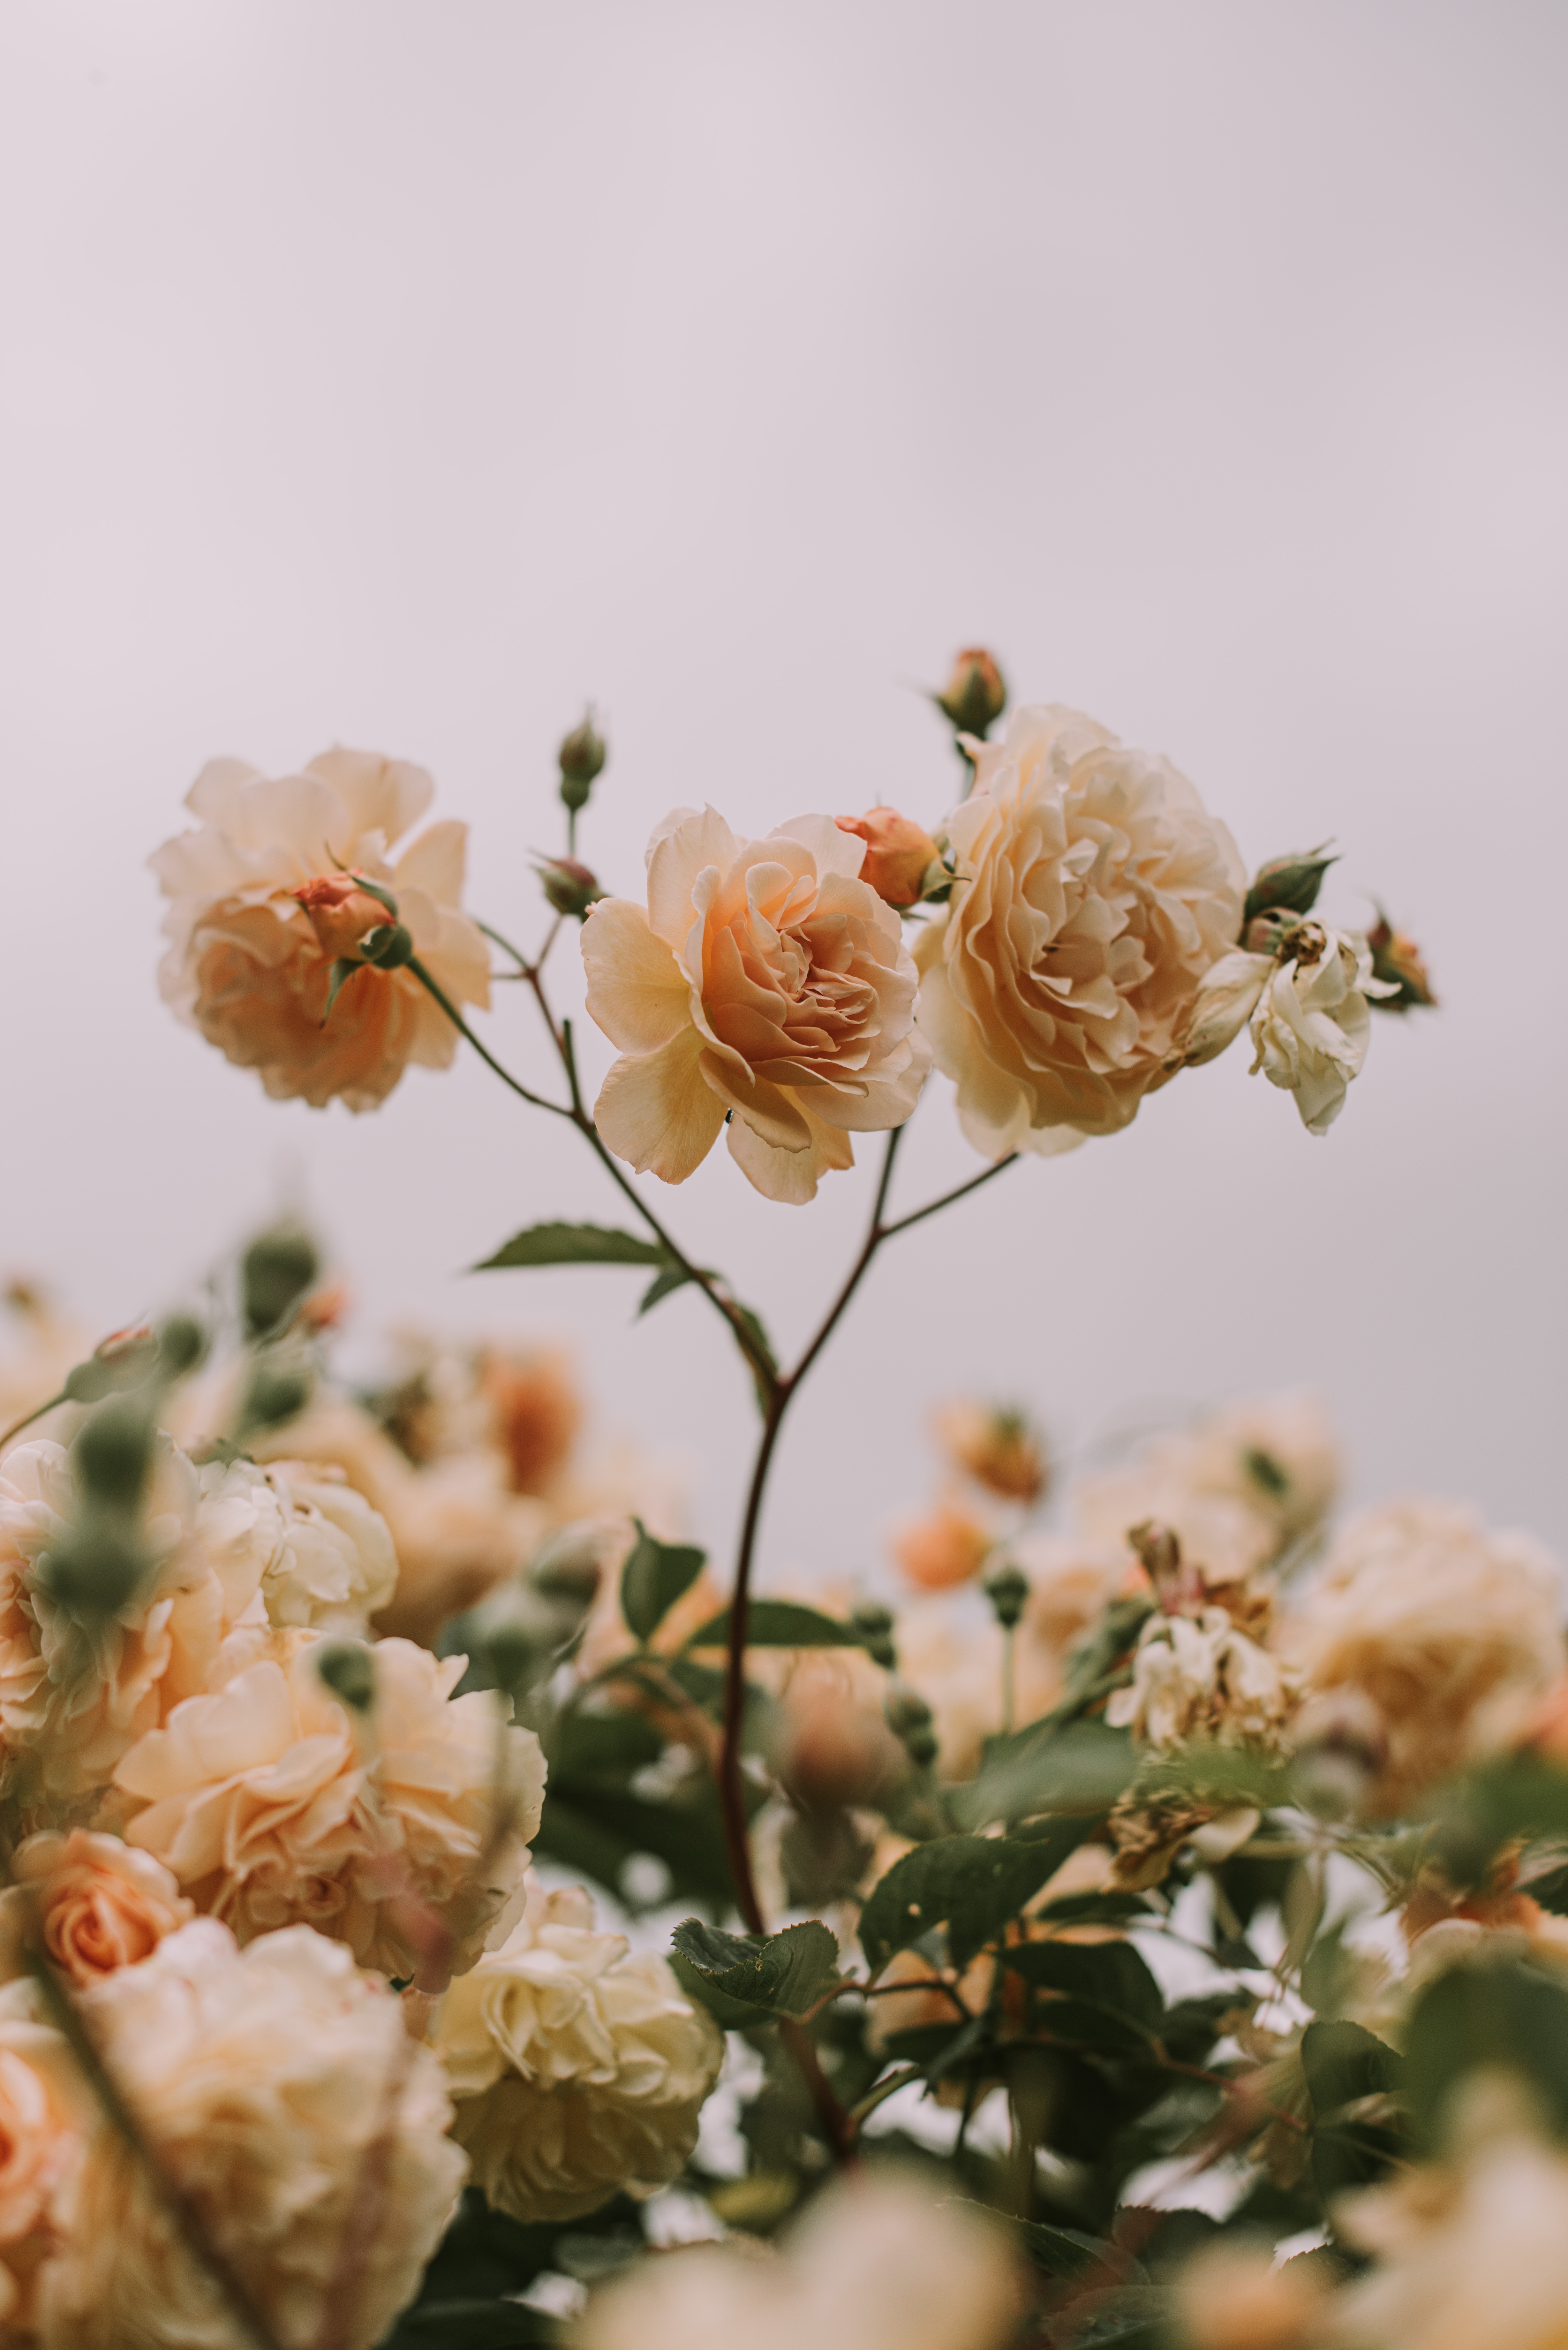 Скачать обои бесплатно Растение, Цветы, Бутоны, Розы, Цветение картинка на рабочий стол ПК